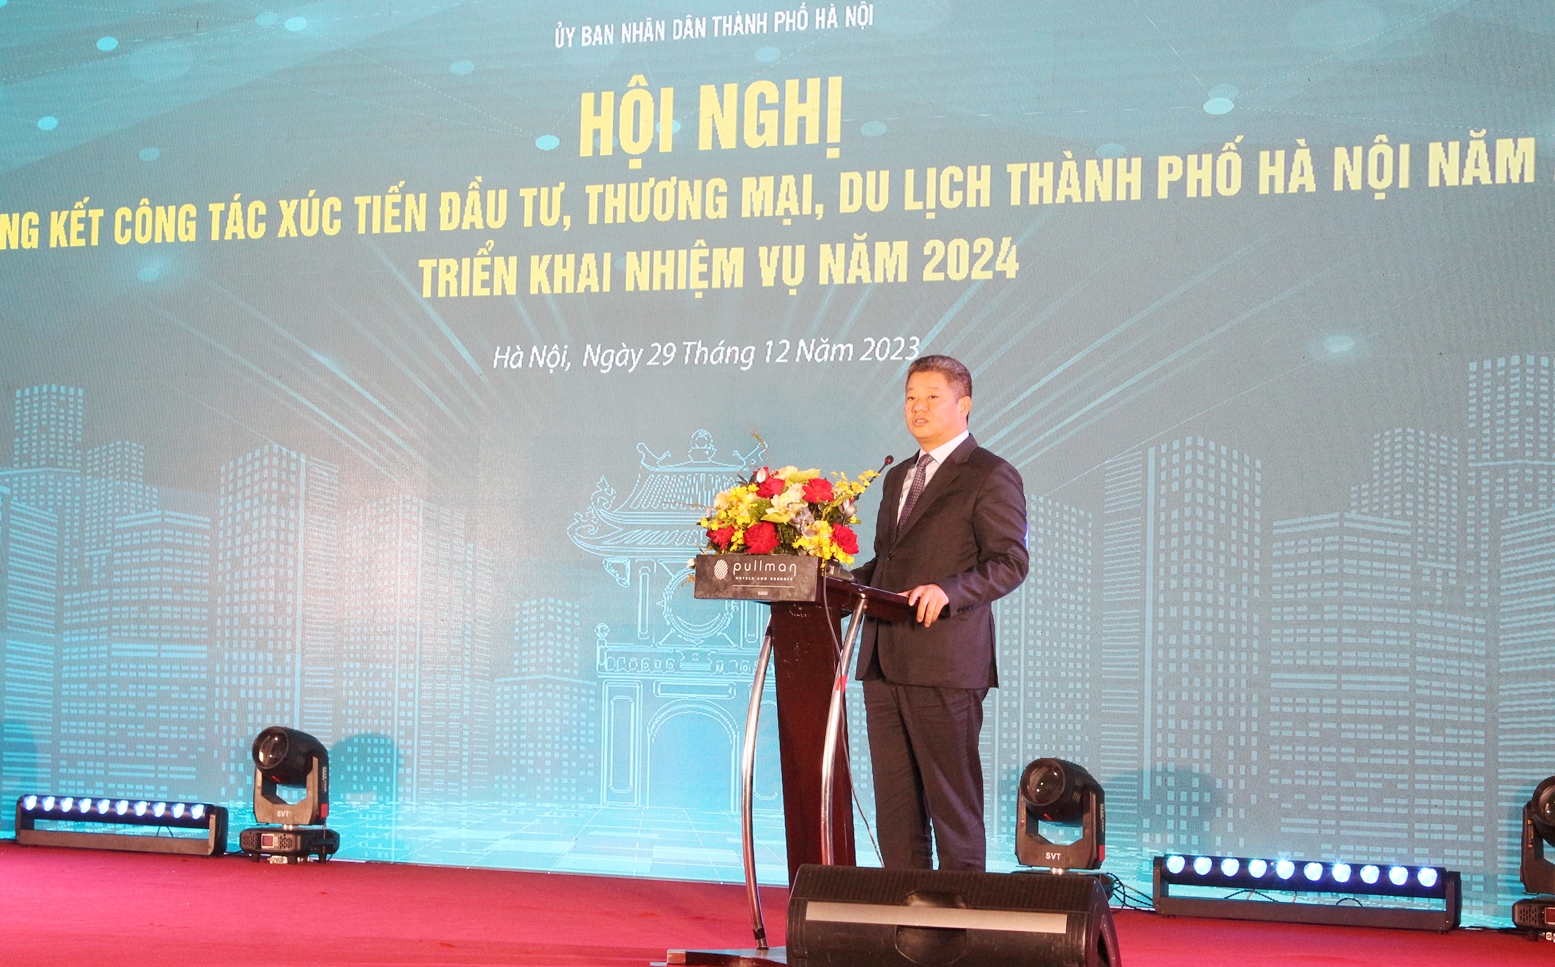  Phó Chủ tịch UBND TP. Hà Nội Nguyễn Mạnh Quyền phát biểu tại Hội nghị